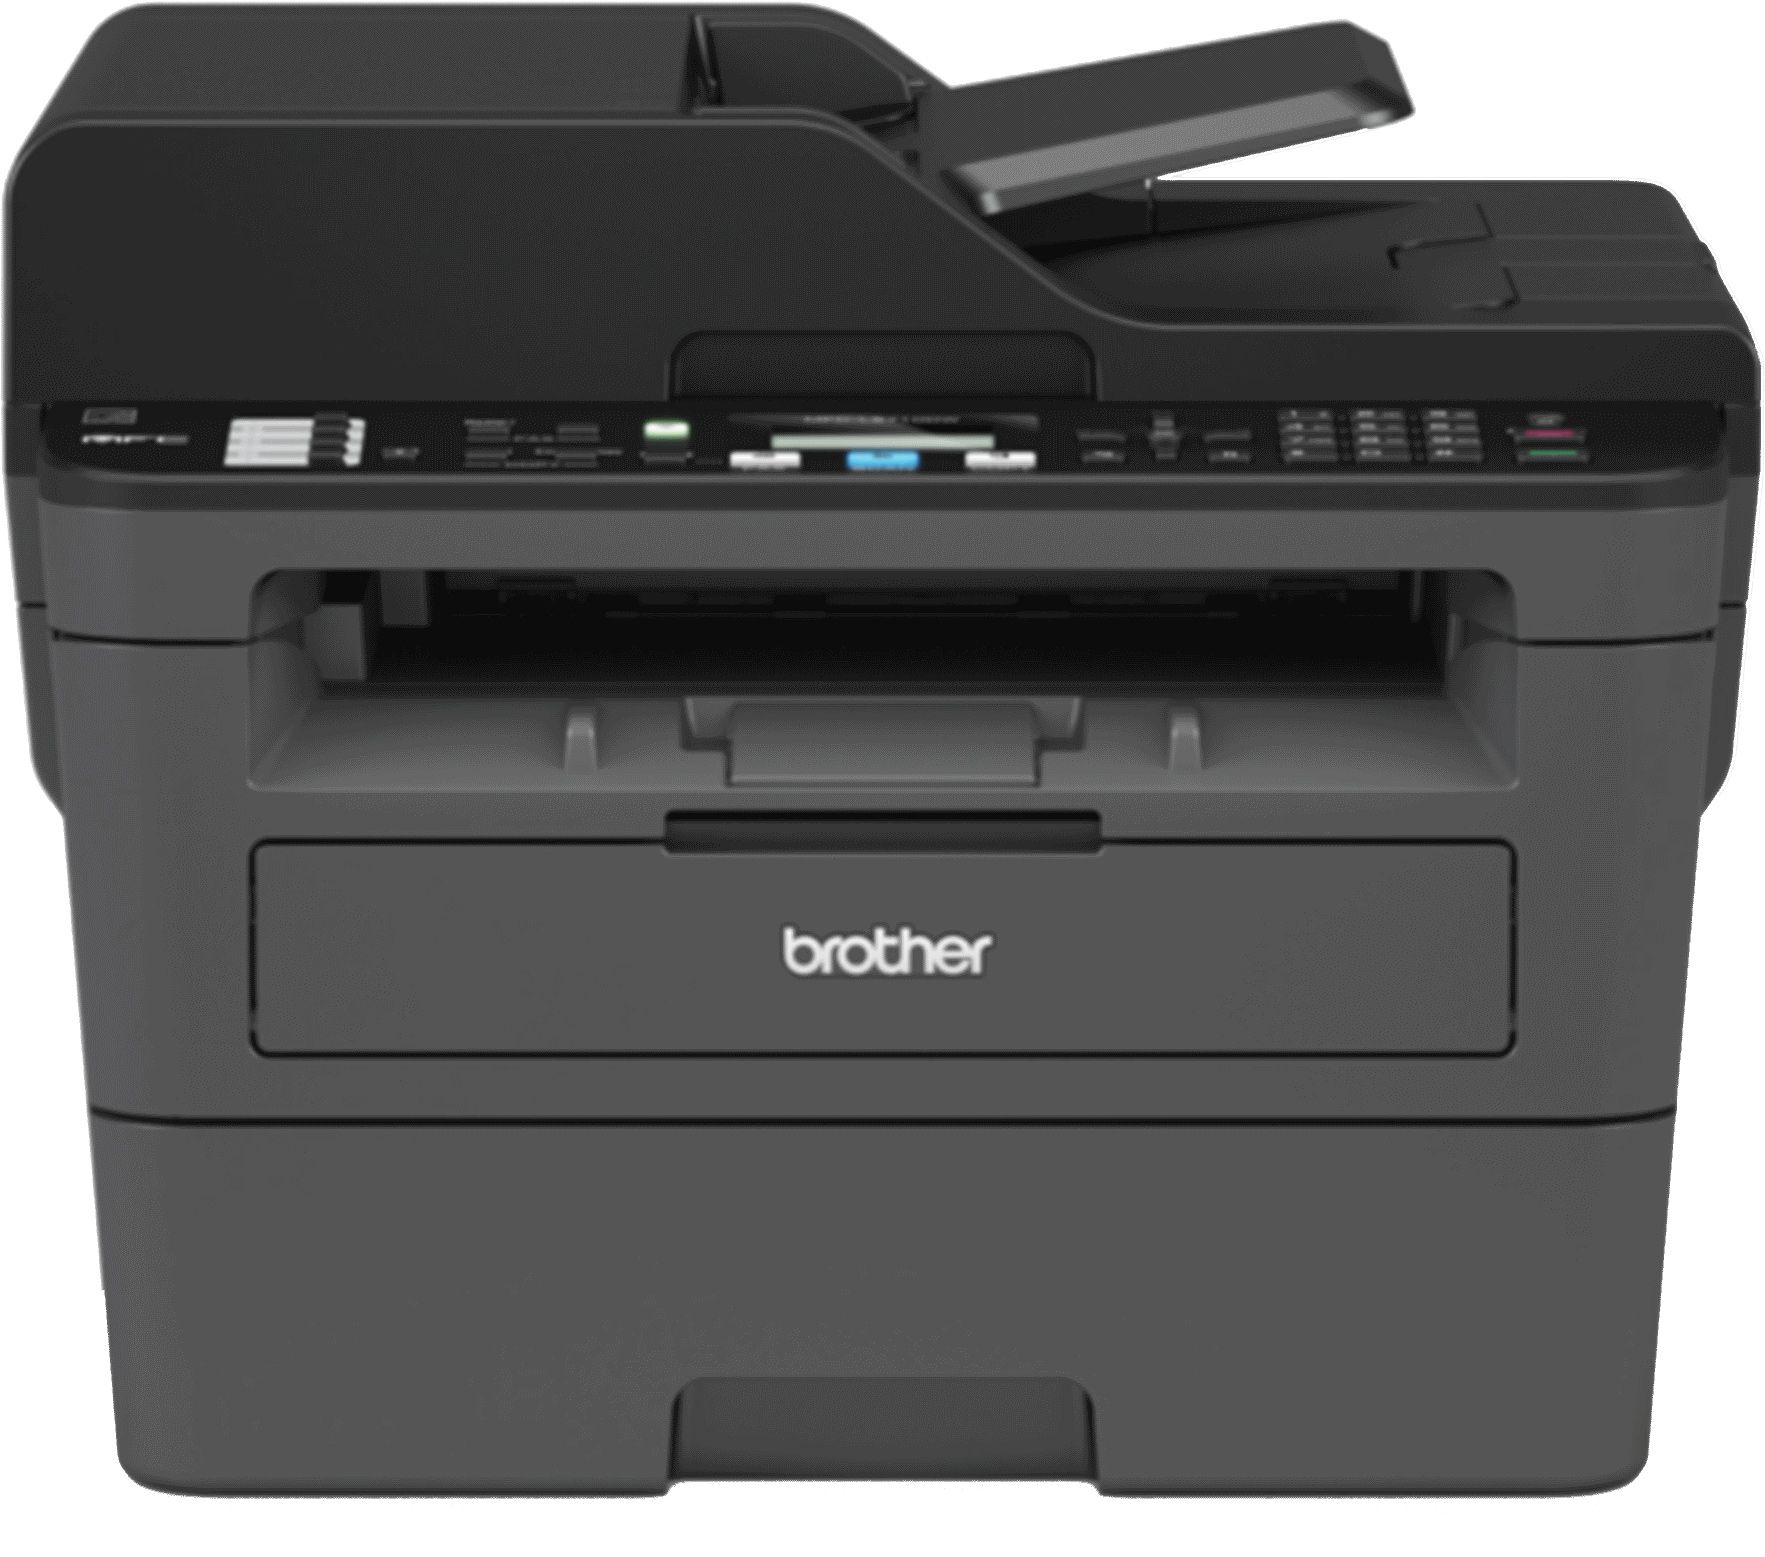 Brother MFC-L2710DW Laser Printer - Black